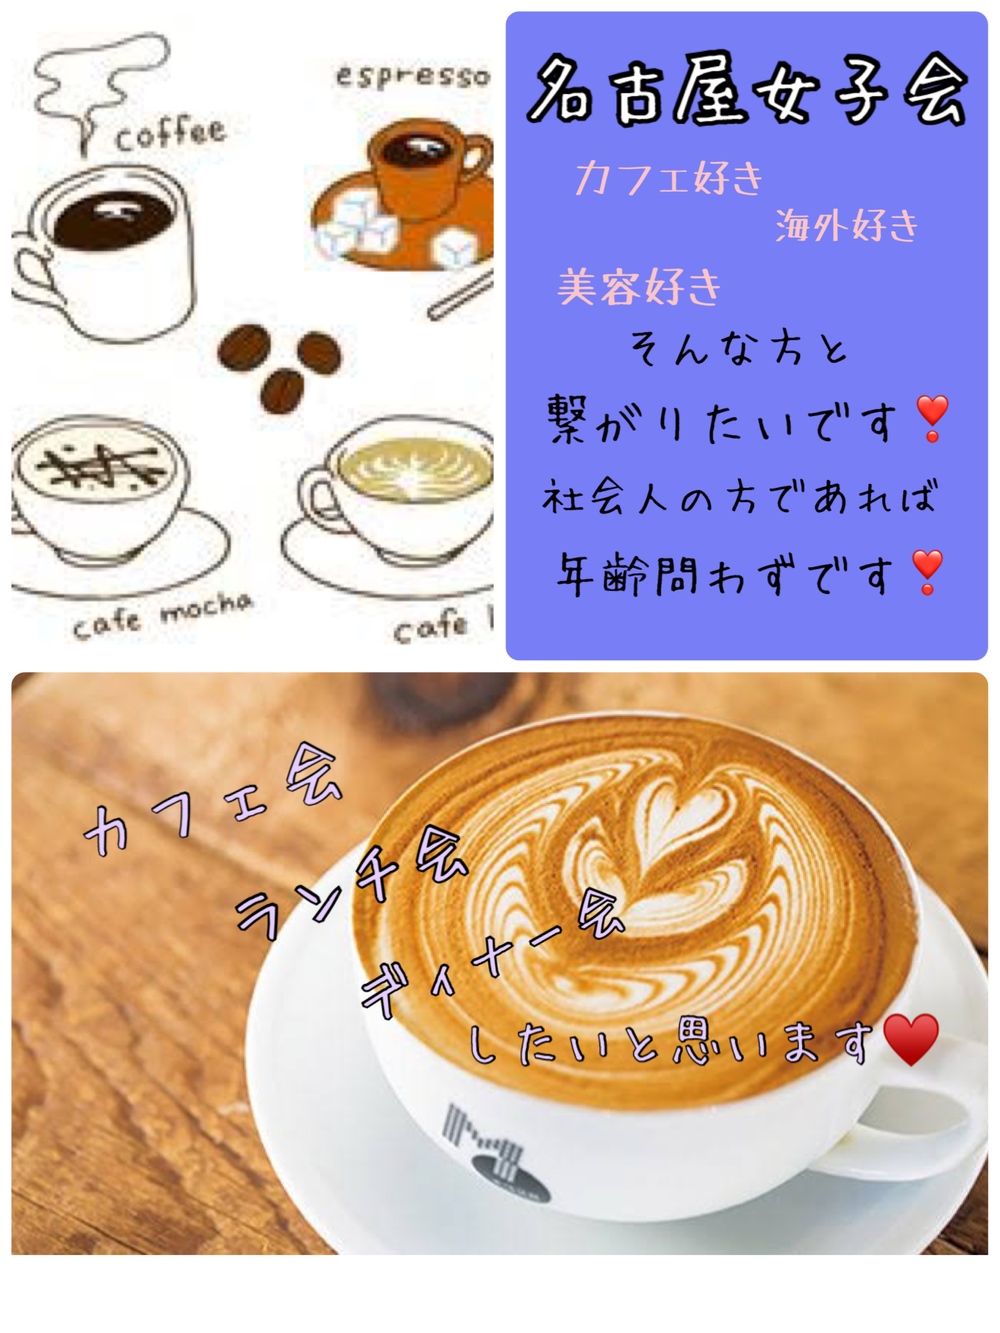 【金山x仕事終わりコーヒー】